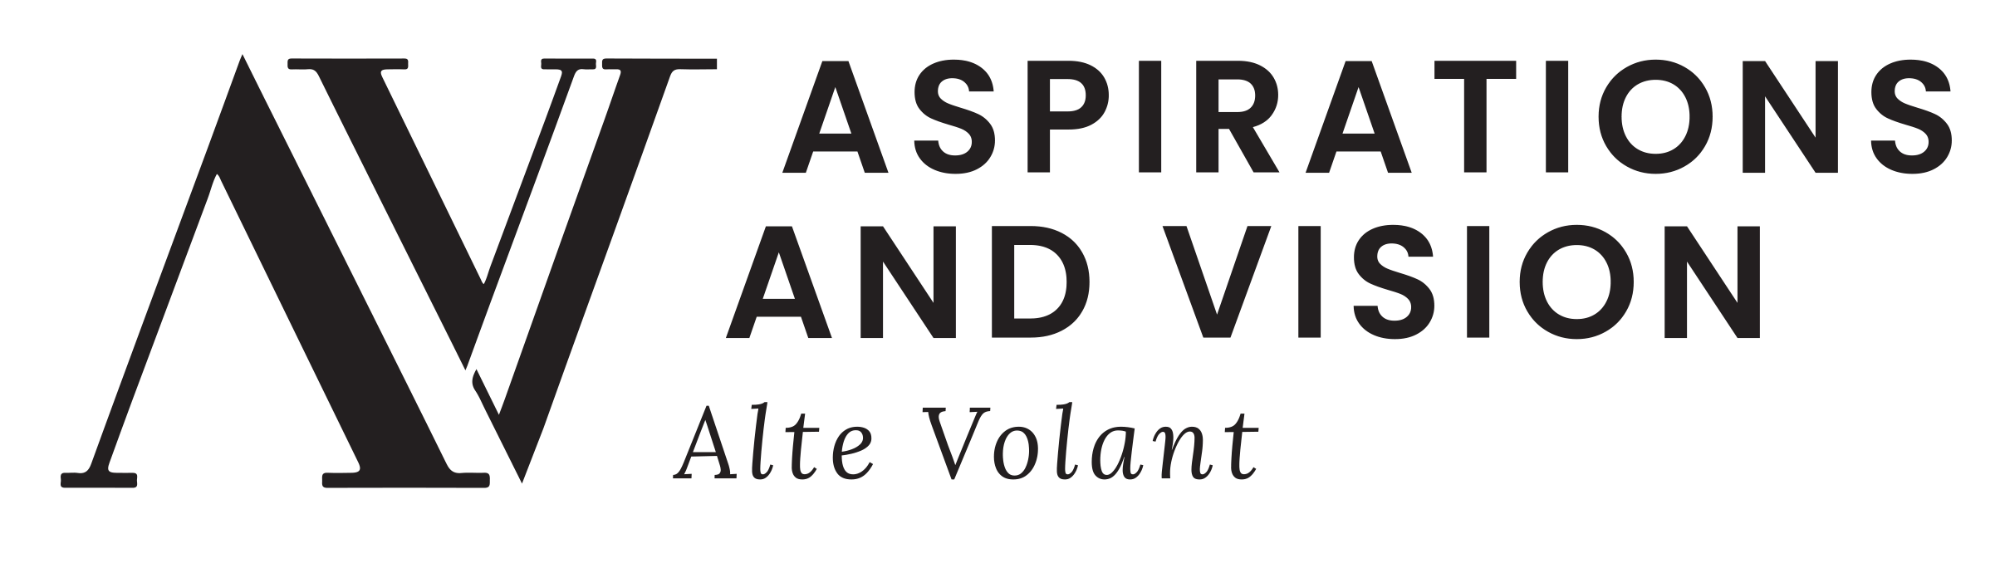 AV logo design